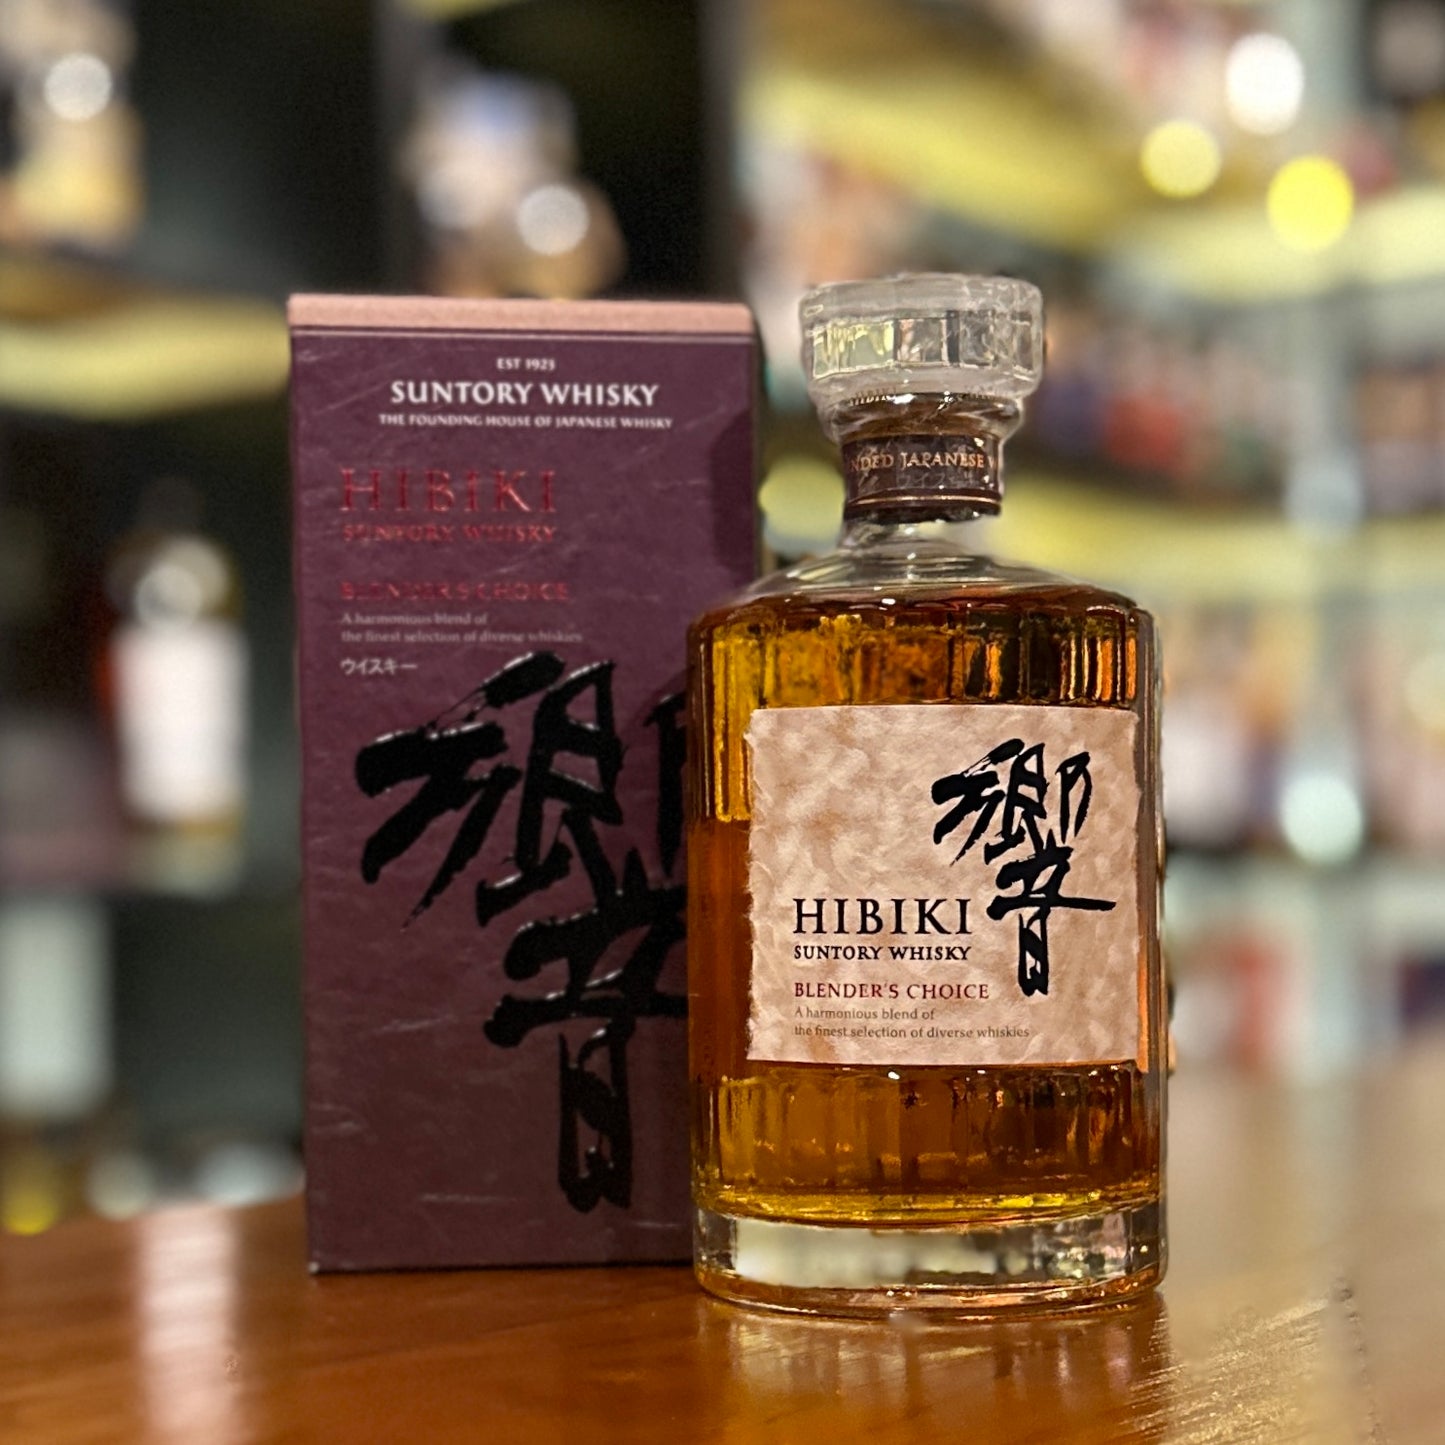 Hibiki Blender's Choice Blended Japanese Whisky